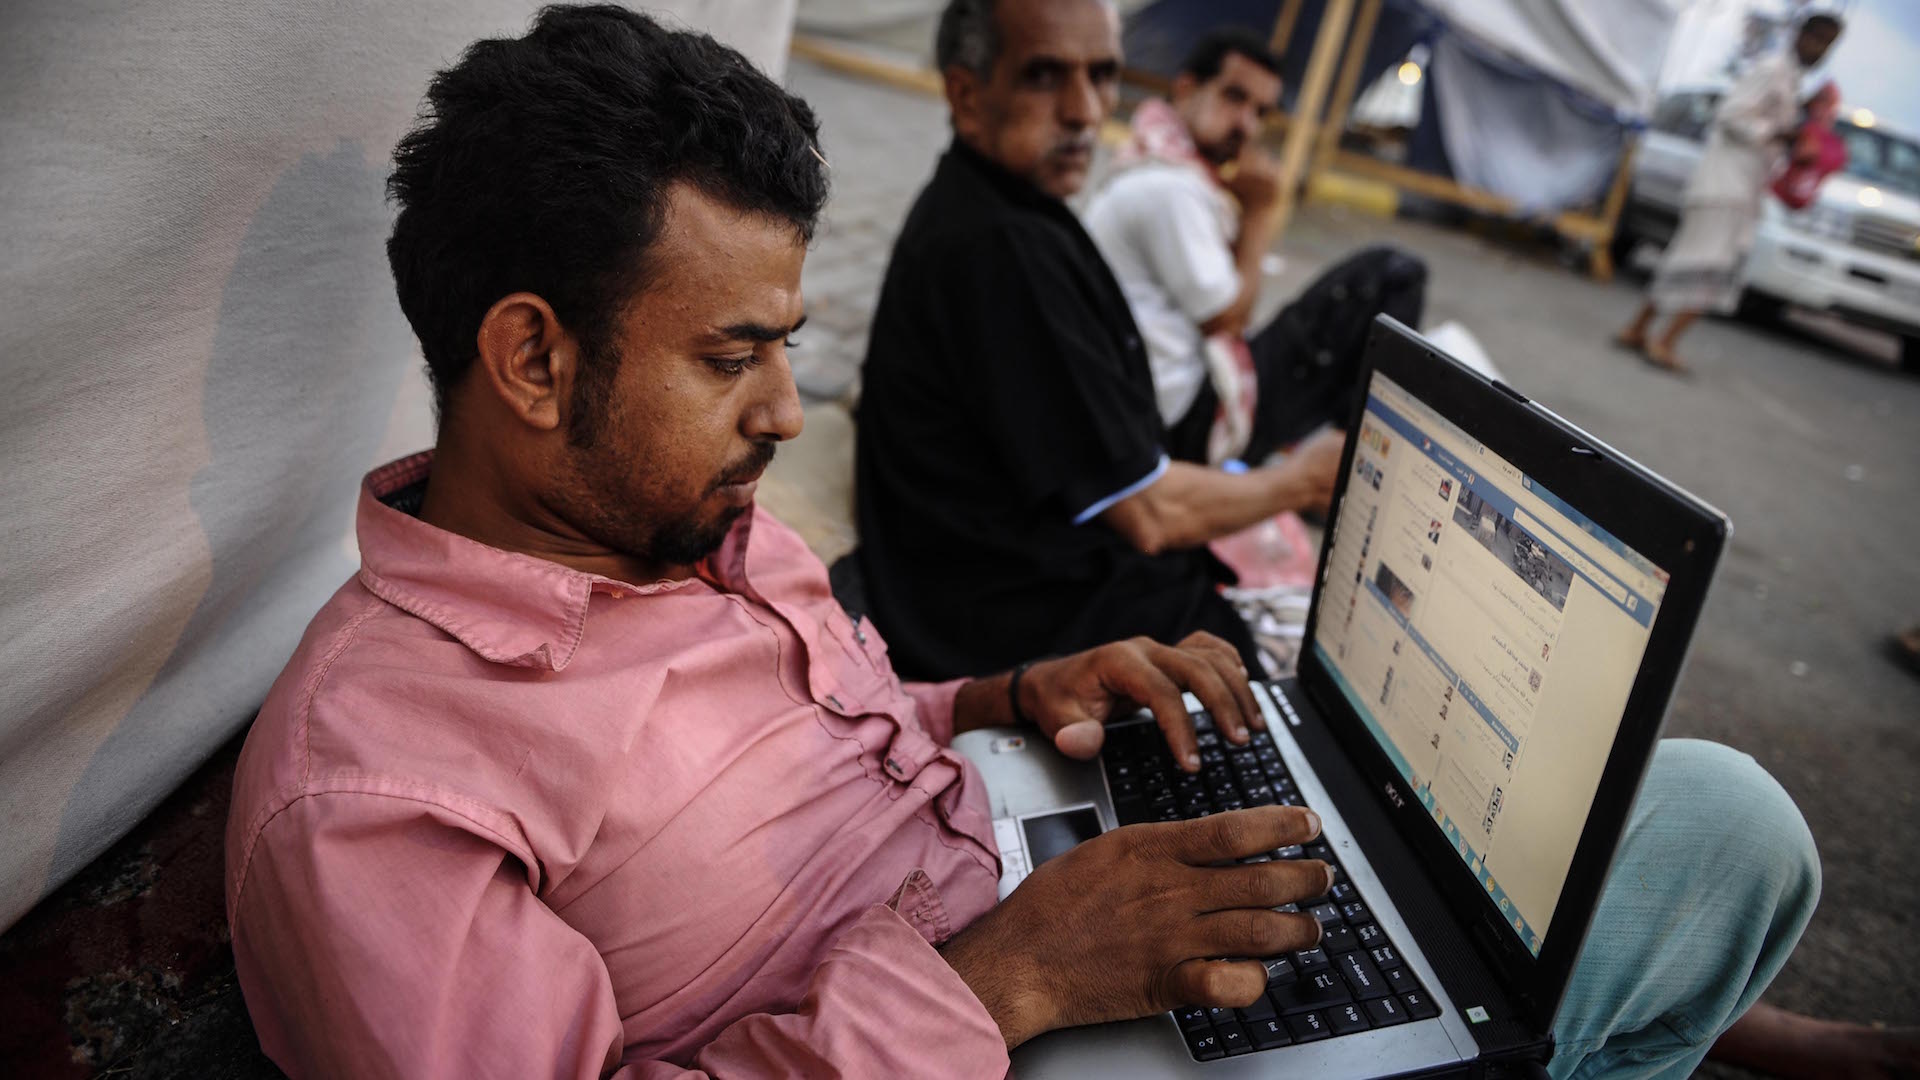  عودة خدمة الإنترنت في اليمن بعد انقطاع أربعة أيام عقب ضربات جوية